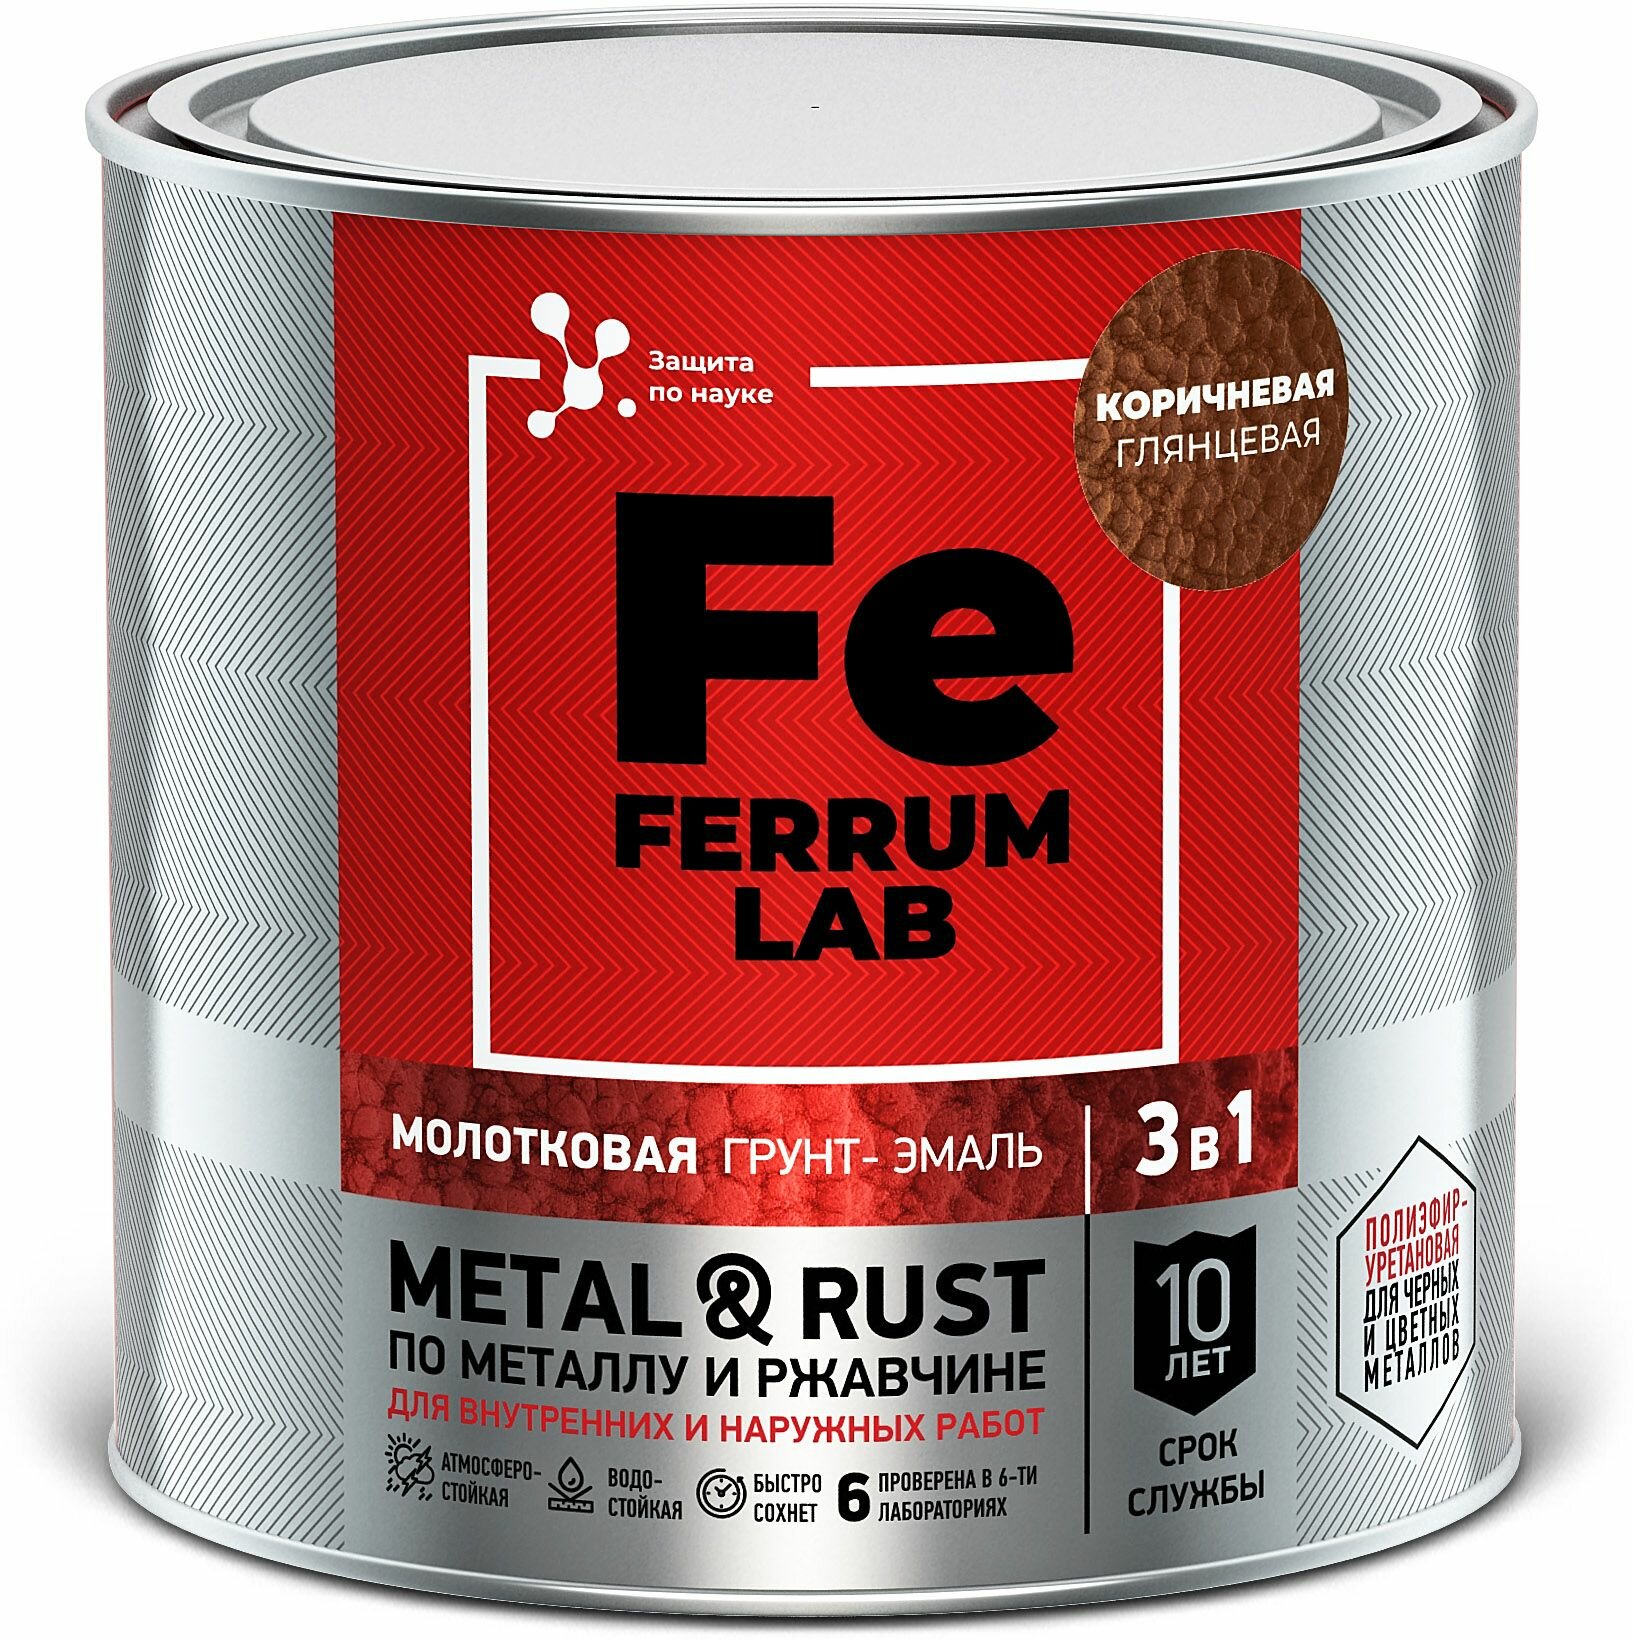 Грунт-эмаль молотковая 3 в 1 по металлу и ржавчине Ferrum Lab (075л) медный